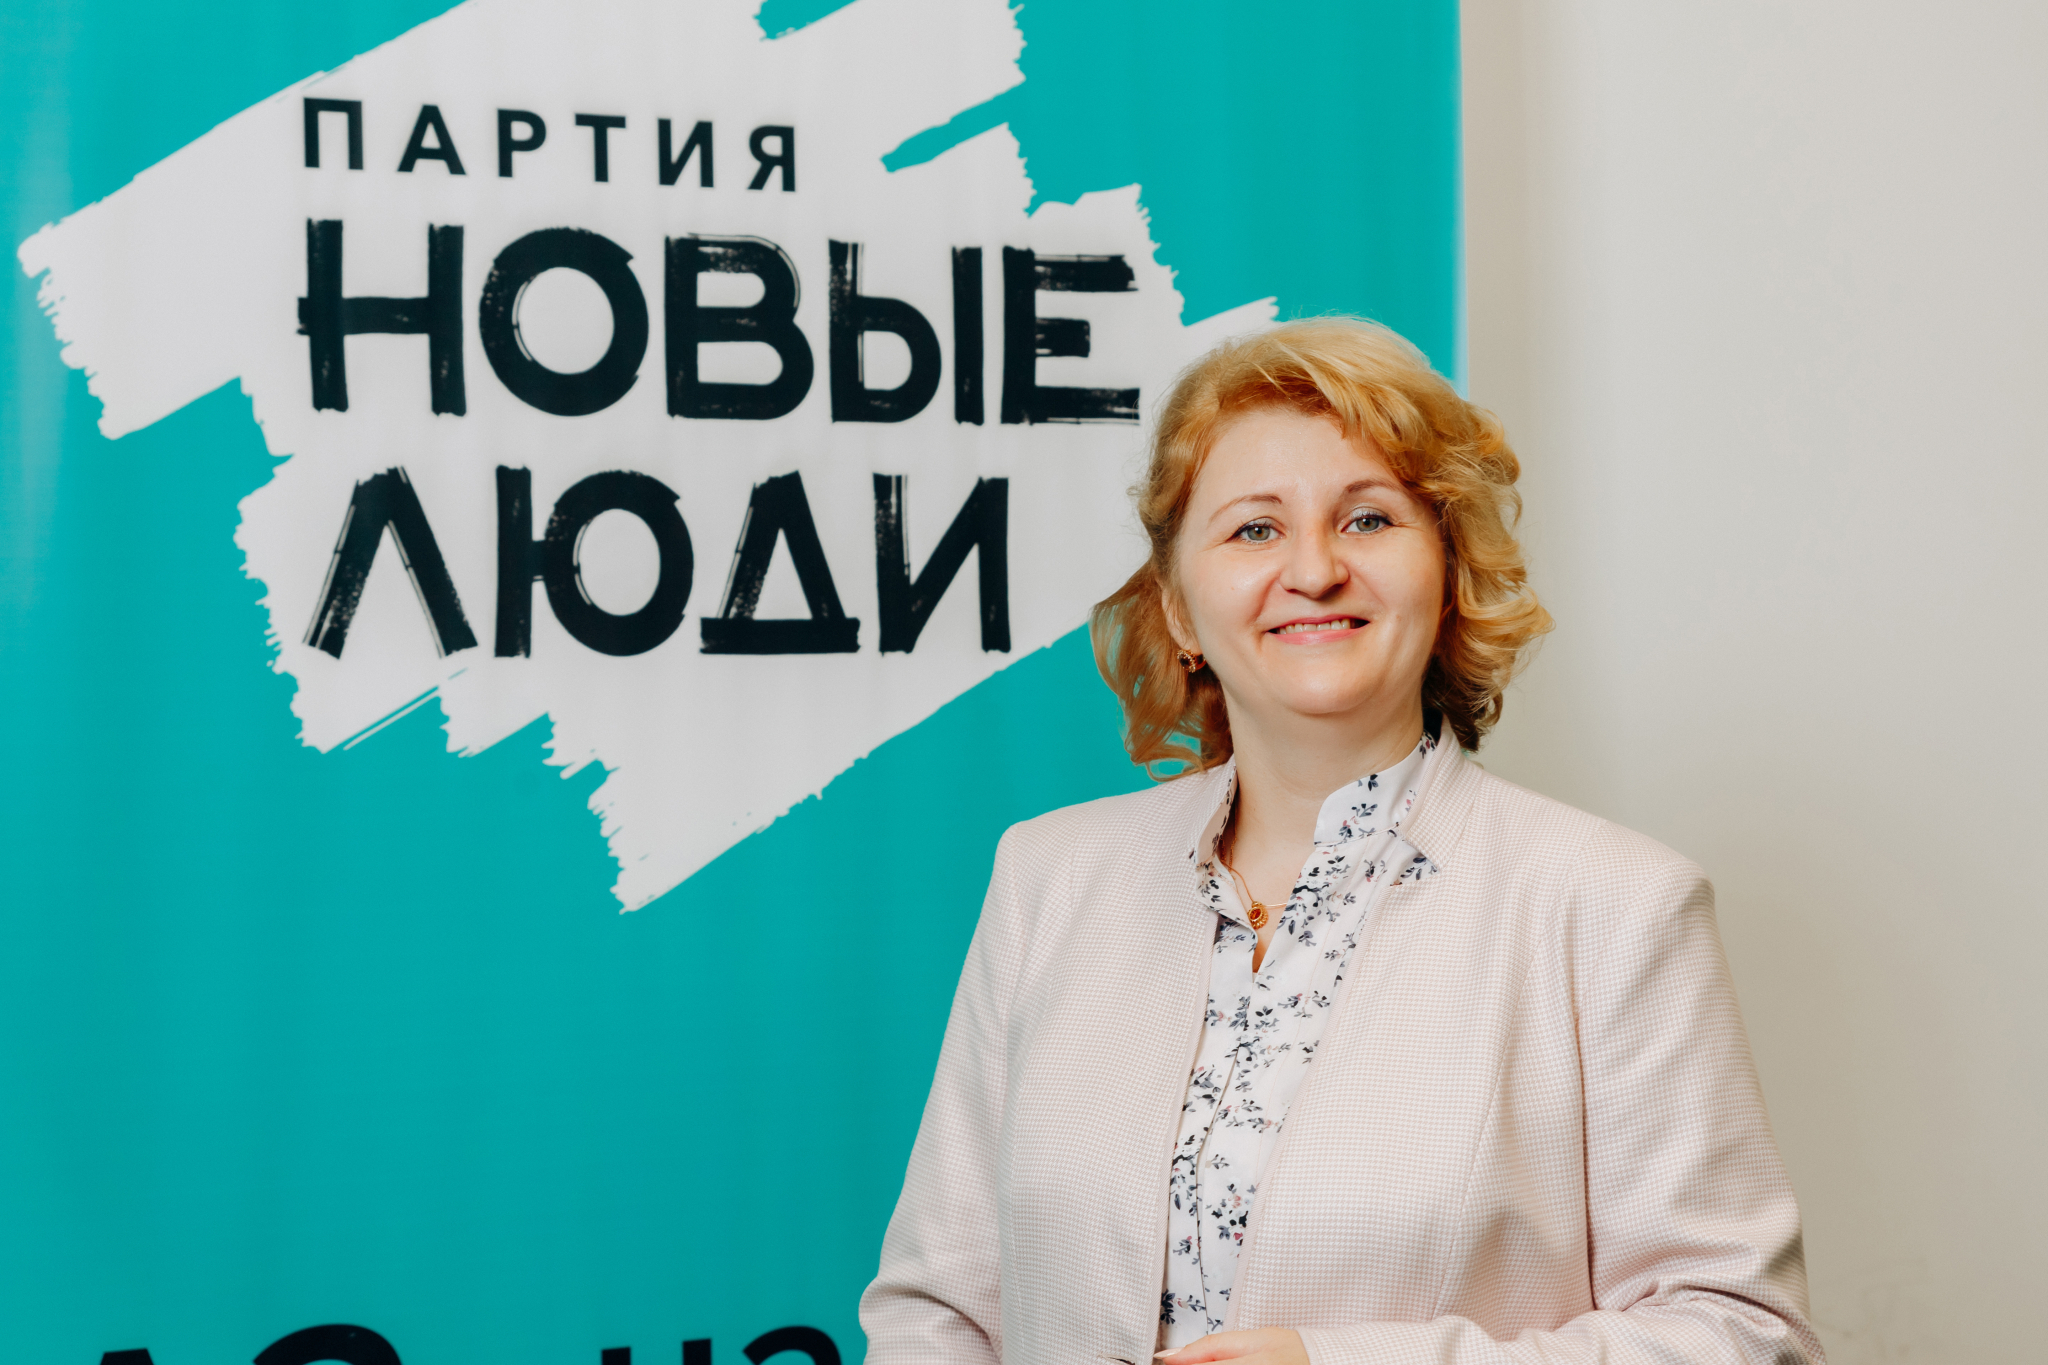 Эльза Кузьмина из города Чебоксары идет в Госдуму вместе с партией «Новые люди»